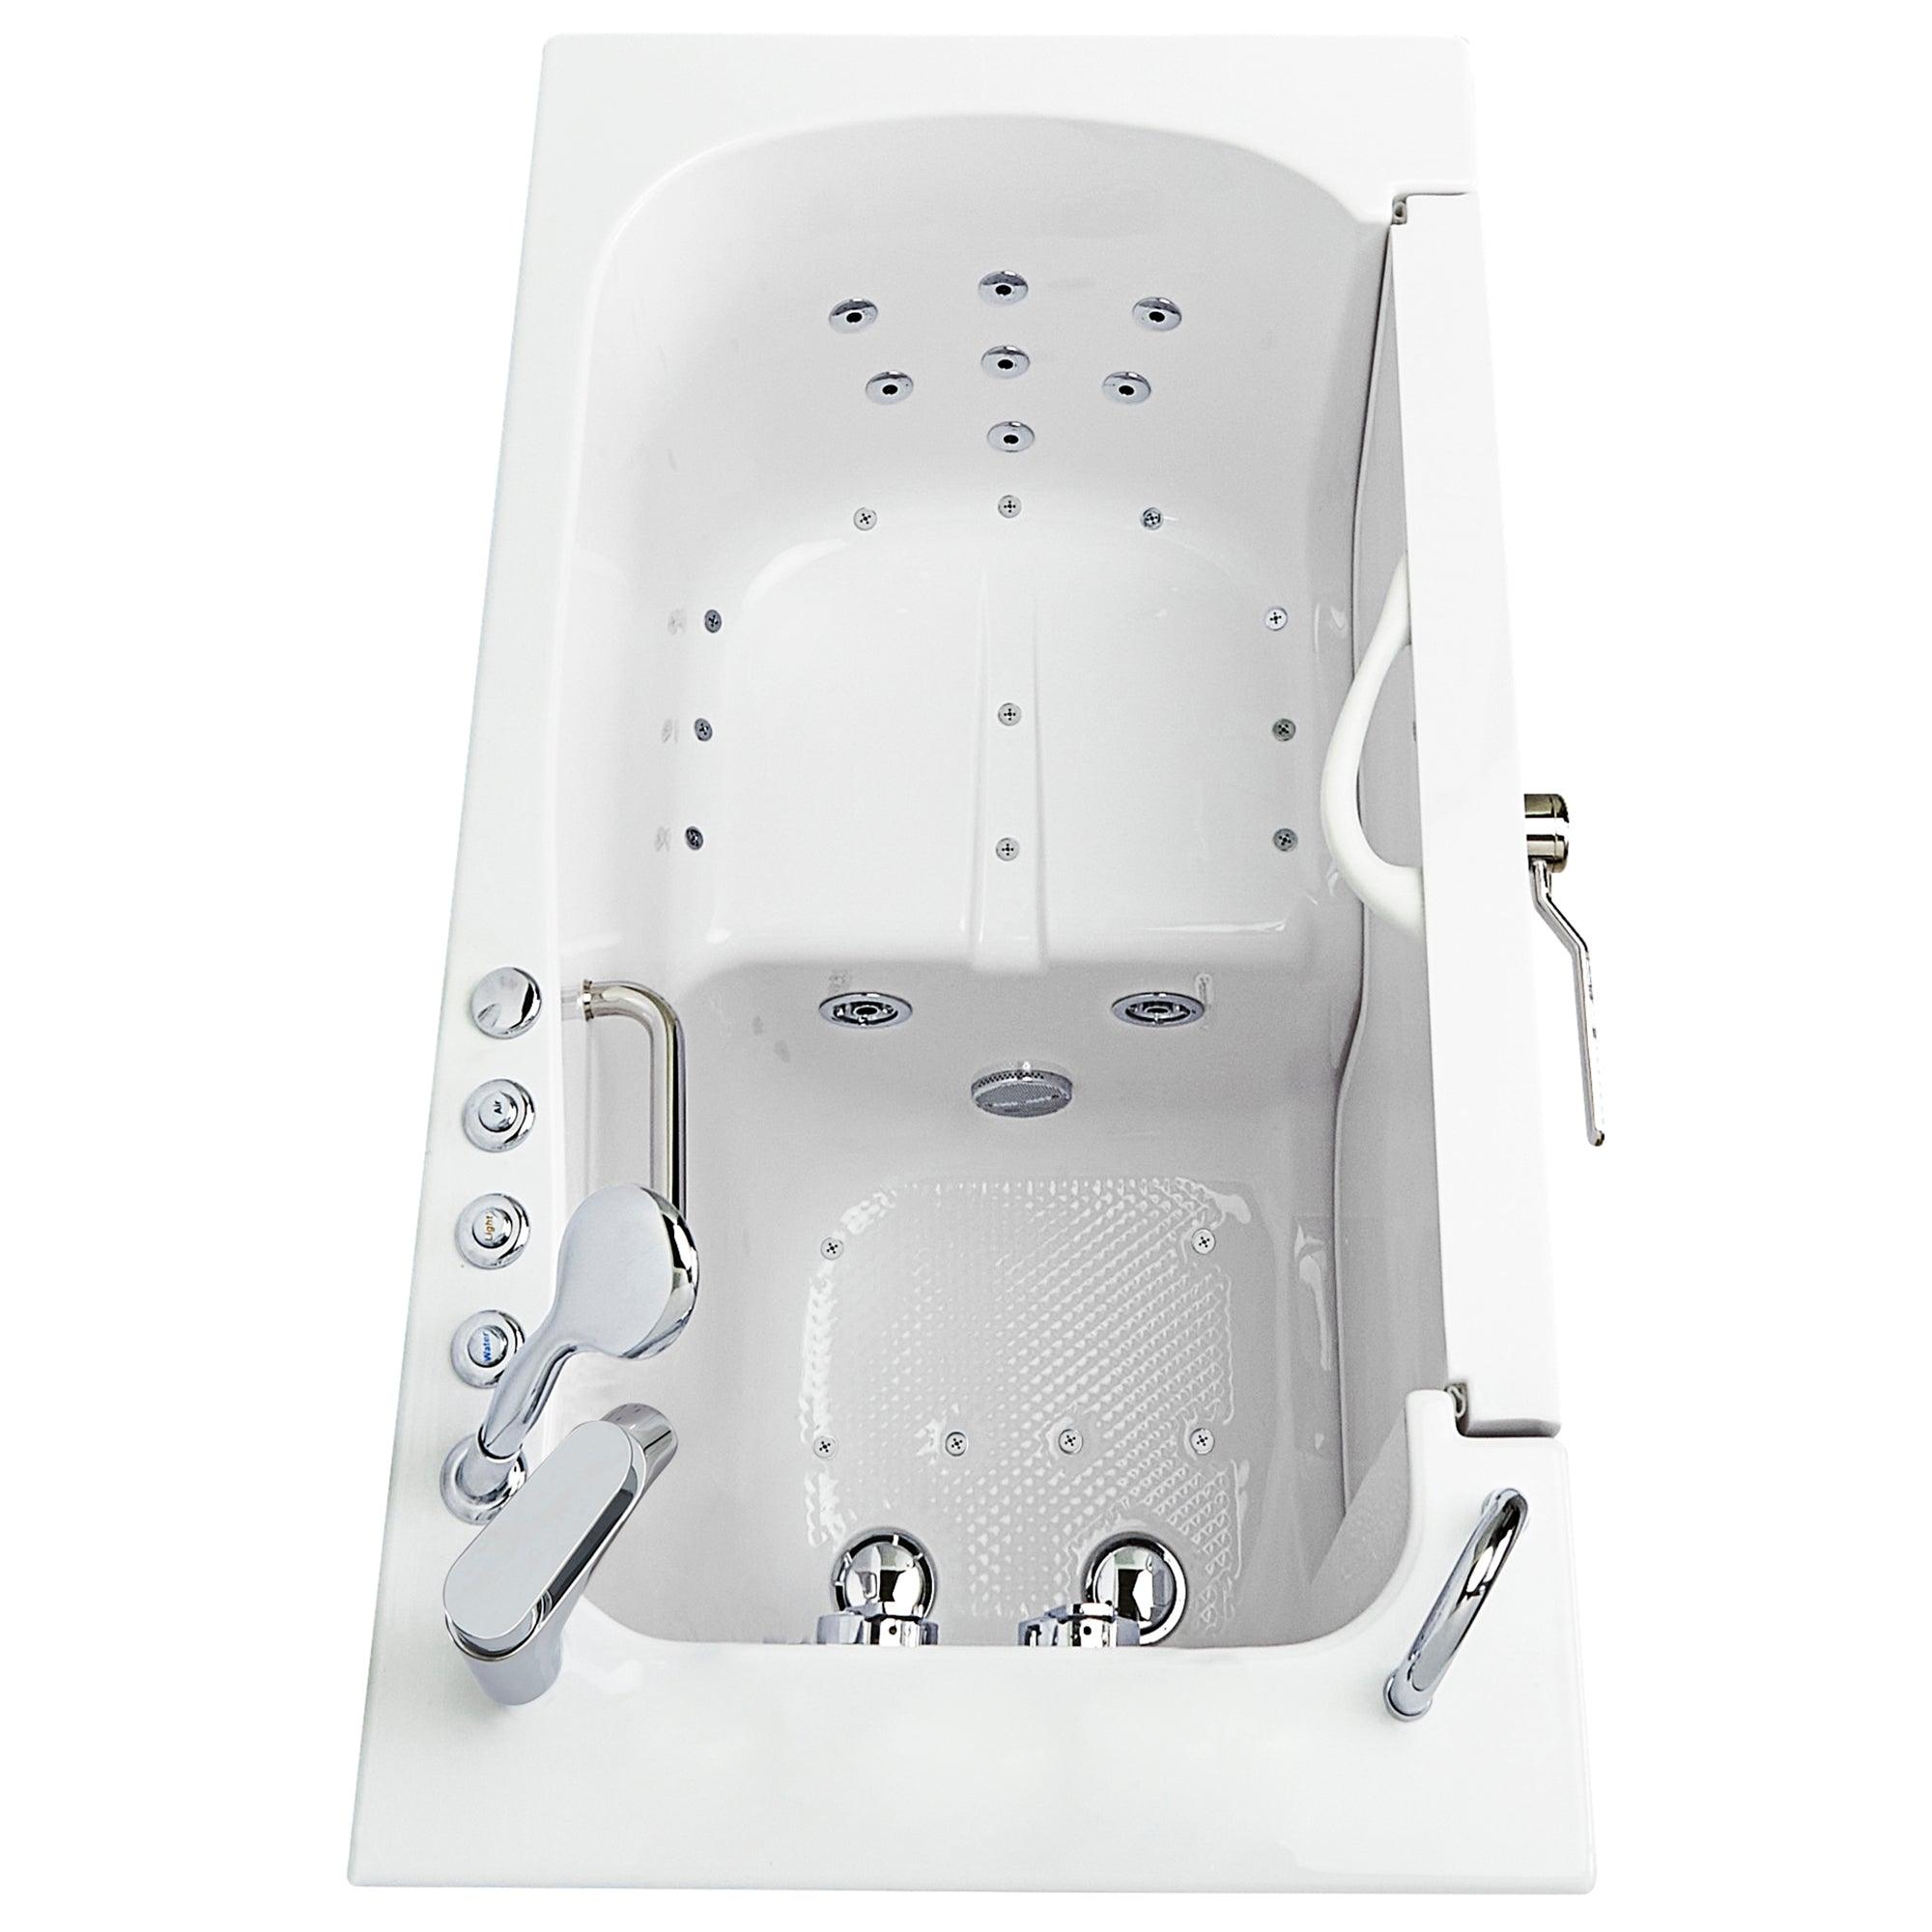 Ella Wheelchair Transfer 30" x 52" Acrylic Air and Hydro Massage Walk-In Bathtub with Heated Seat - Bathroom Design Center